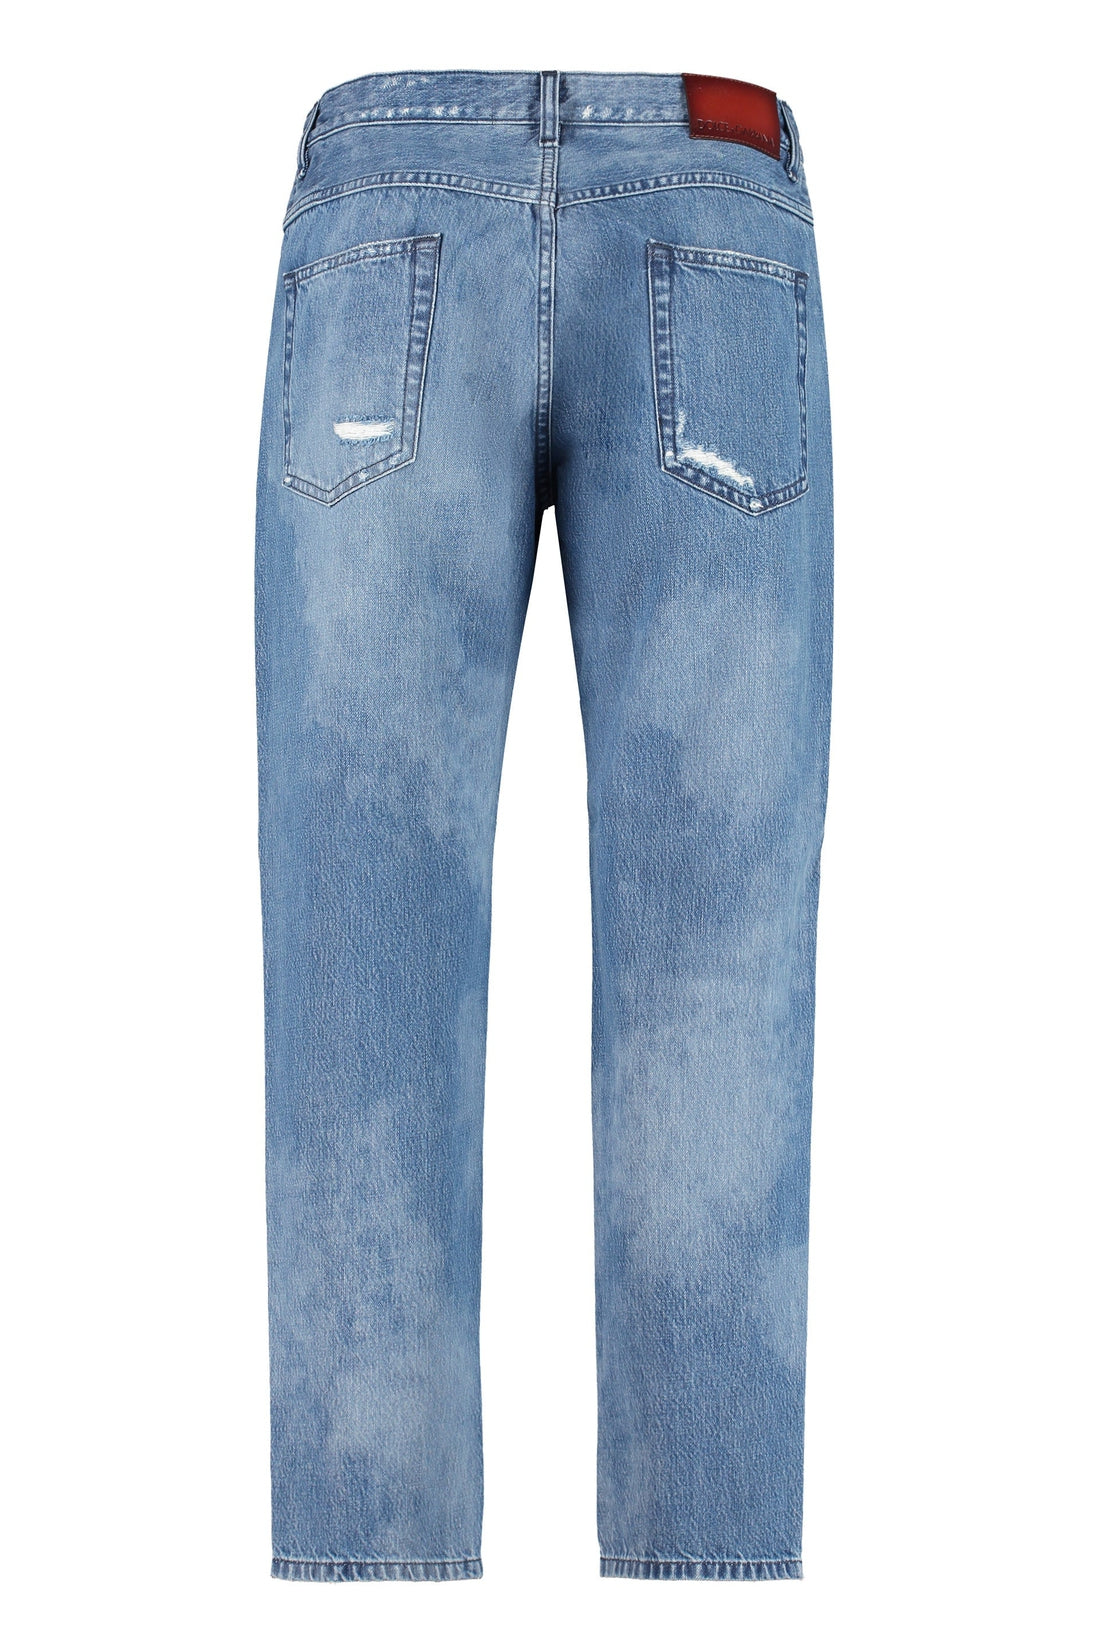 Dolce & Gabbana-OUTLET-SALE-Loose-fit jeans-ARCHIVIST